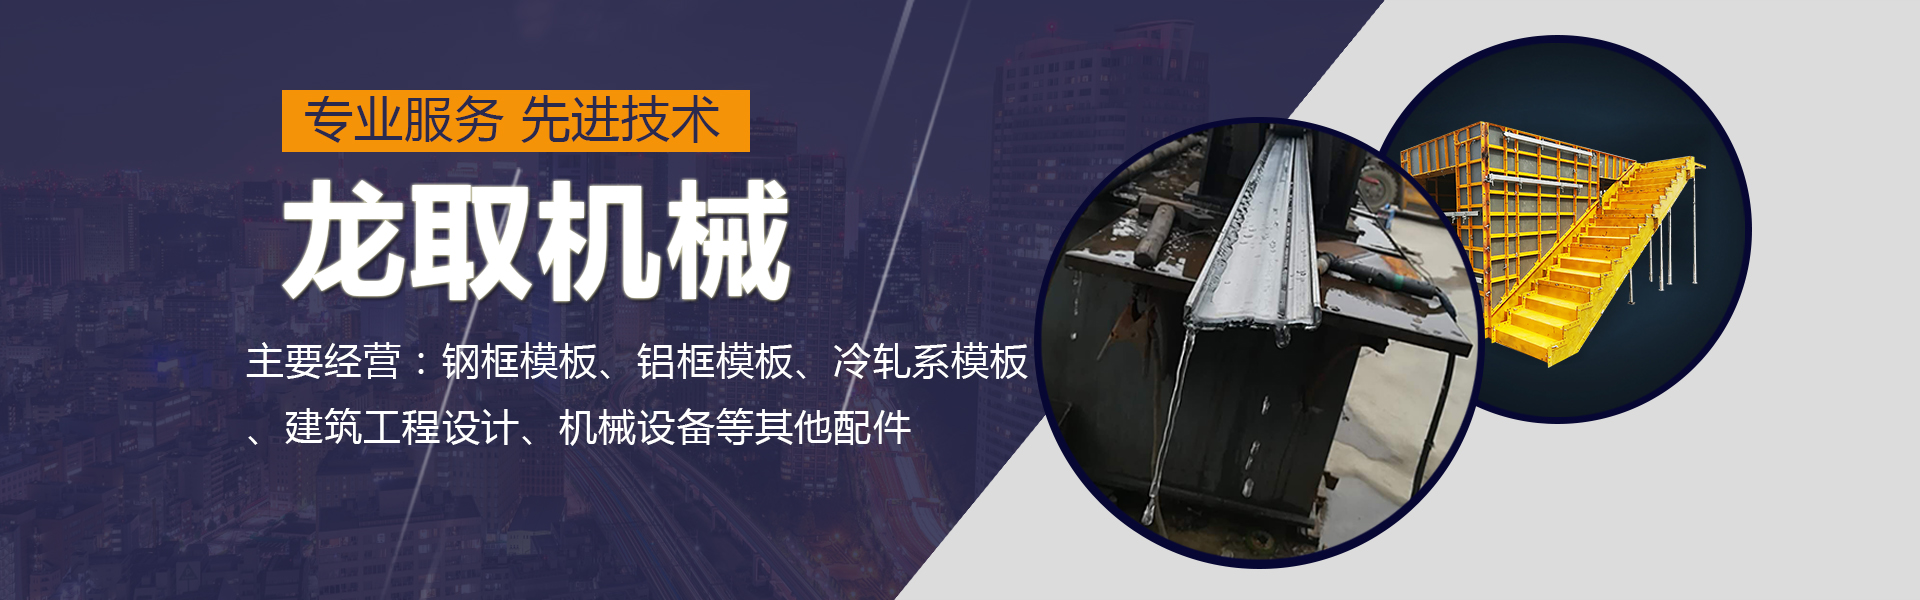 河南龙取机械有限公司铝框模板专业服务厂家